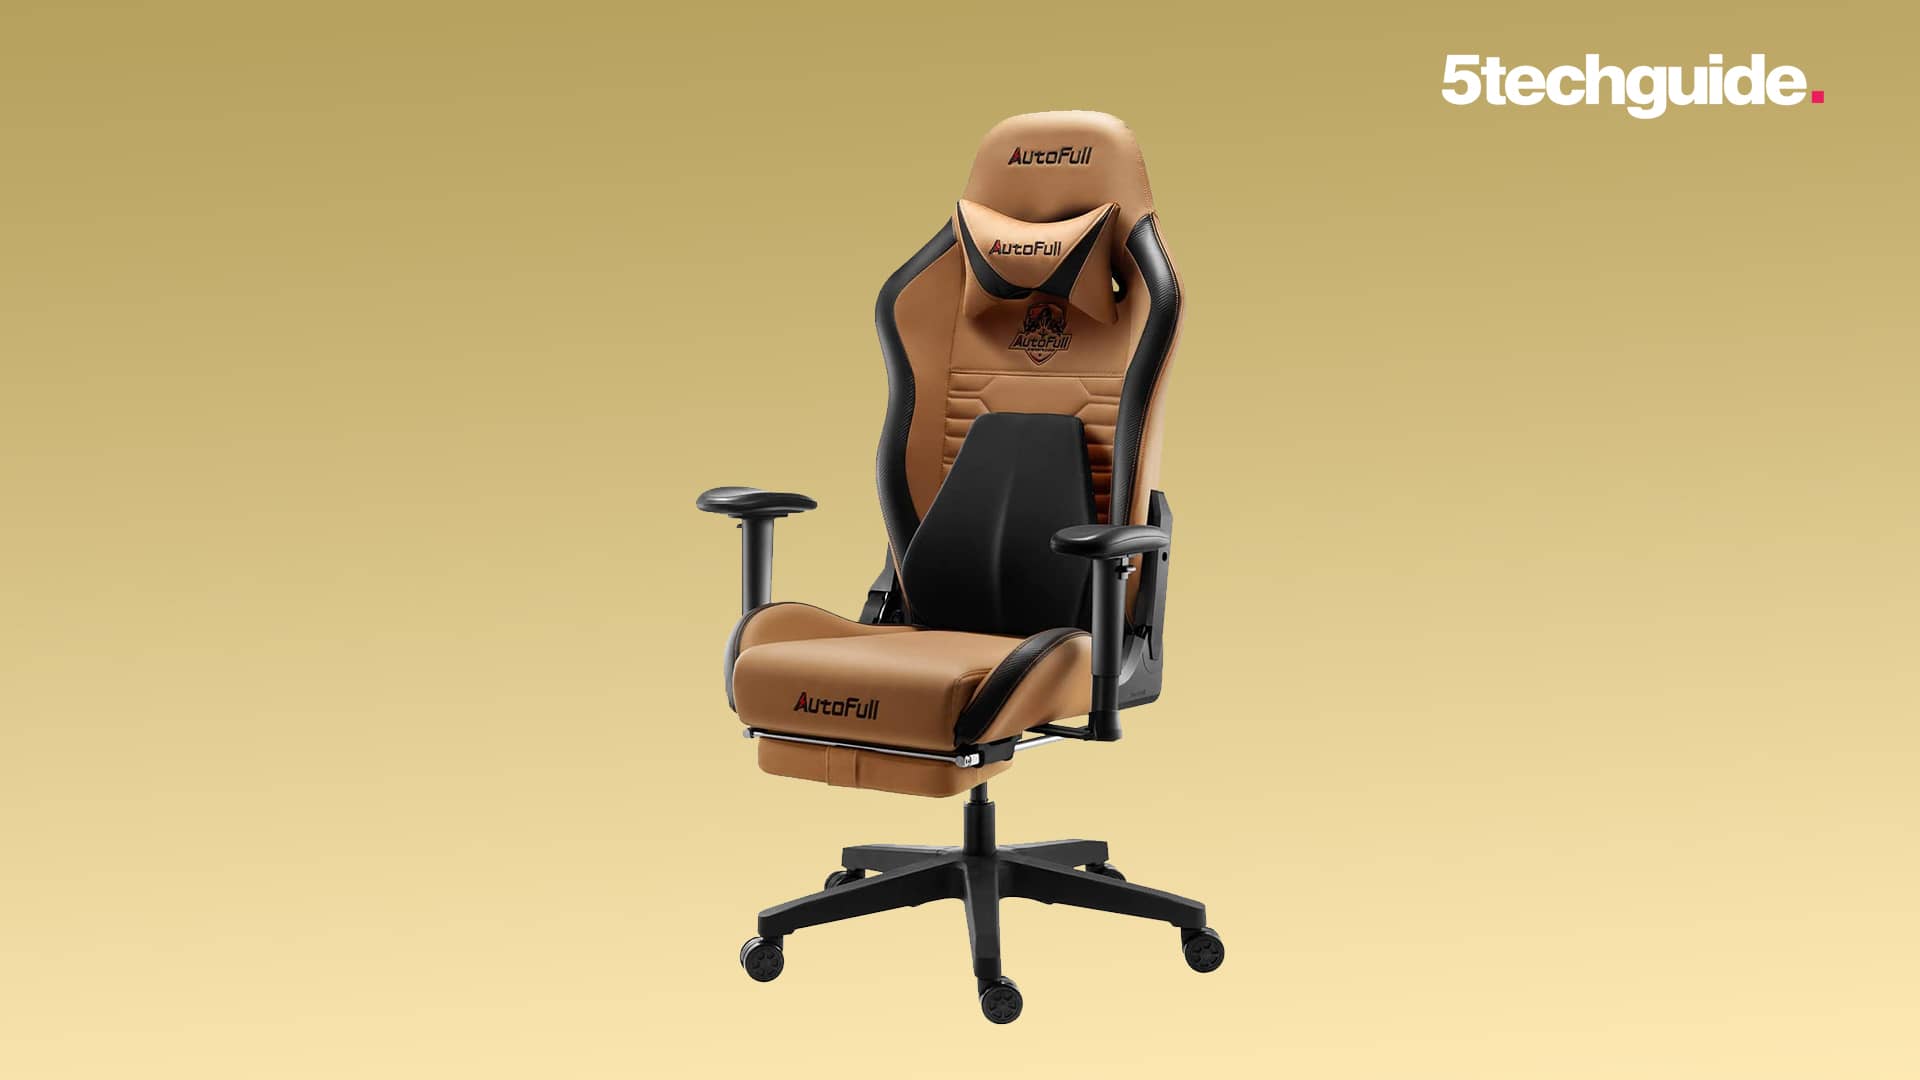 AutoFull C3 Gaming Chair